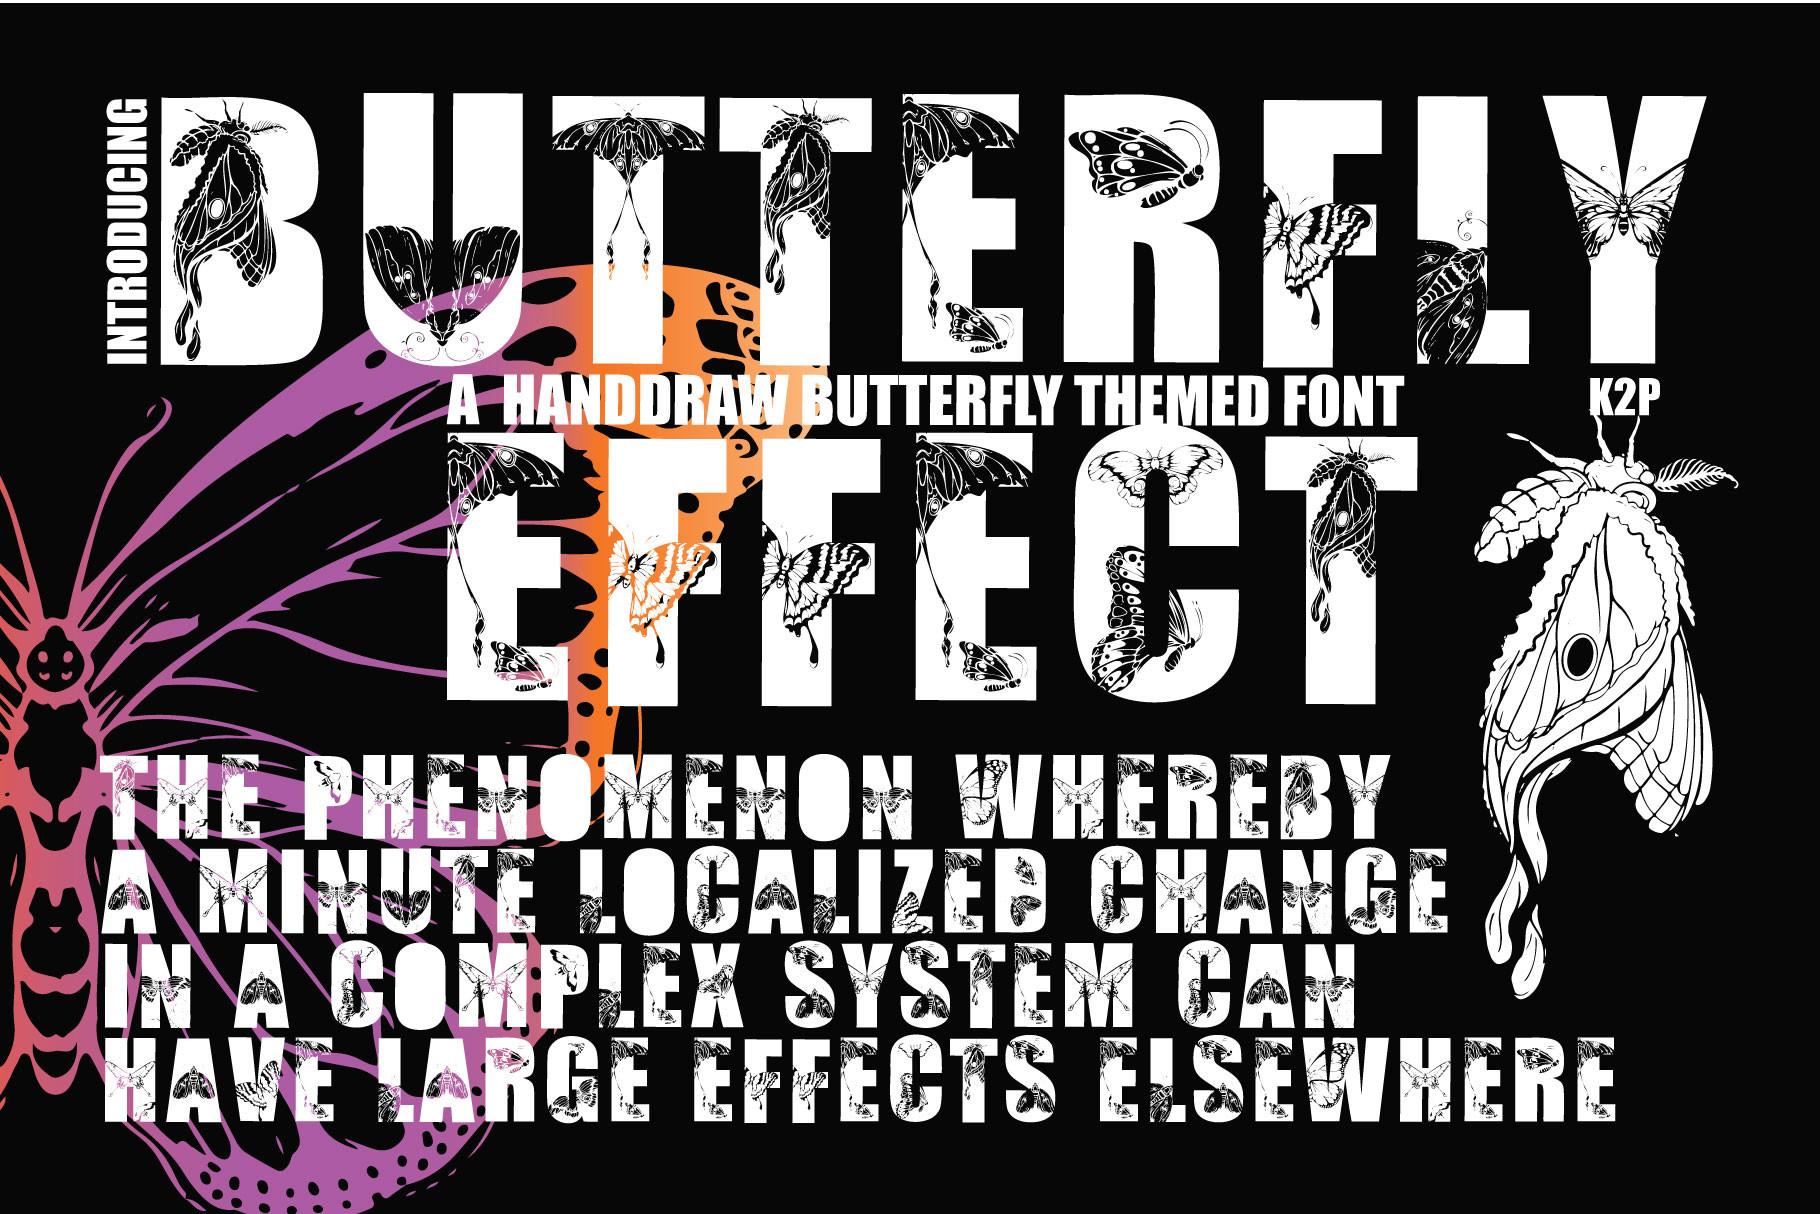 Butterfly Effect Font